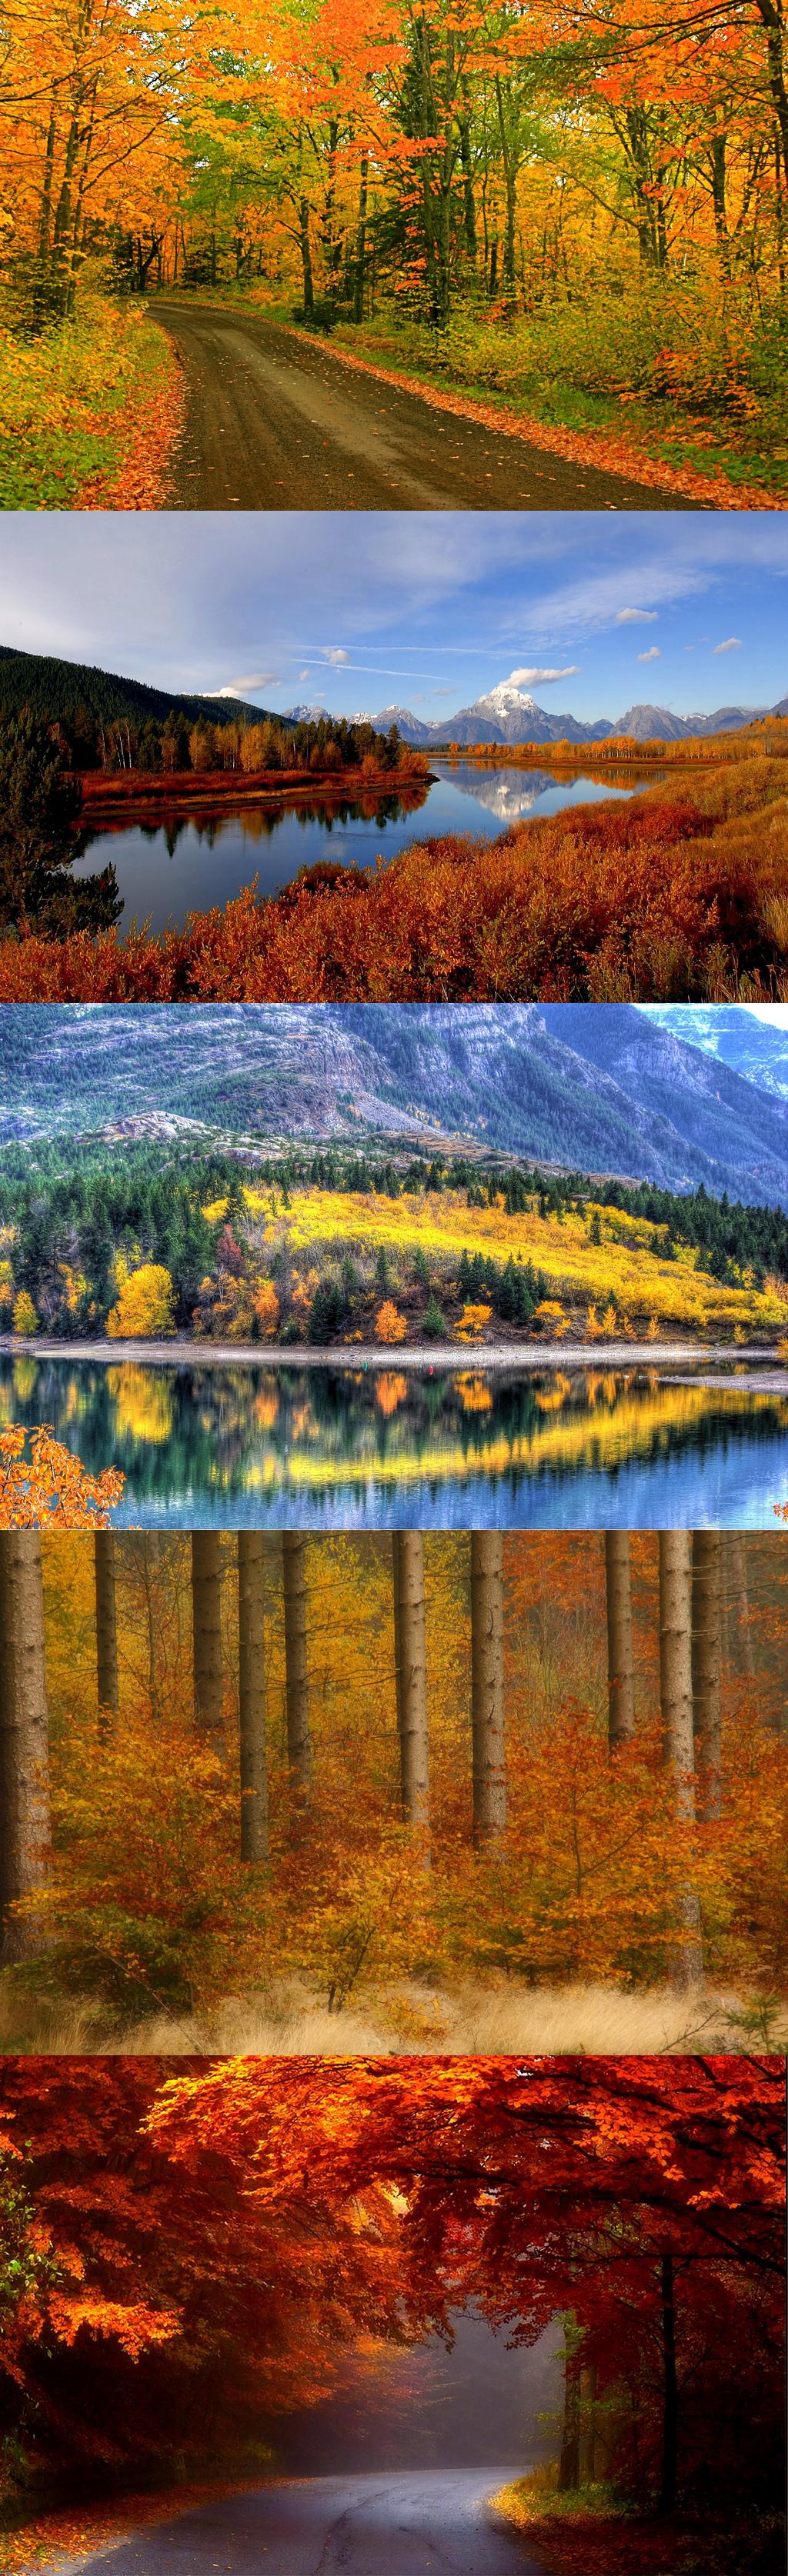 Autumn colors | Forest autumn colors | Pinterest | Autumn colours